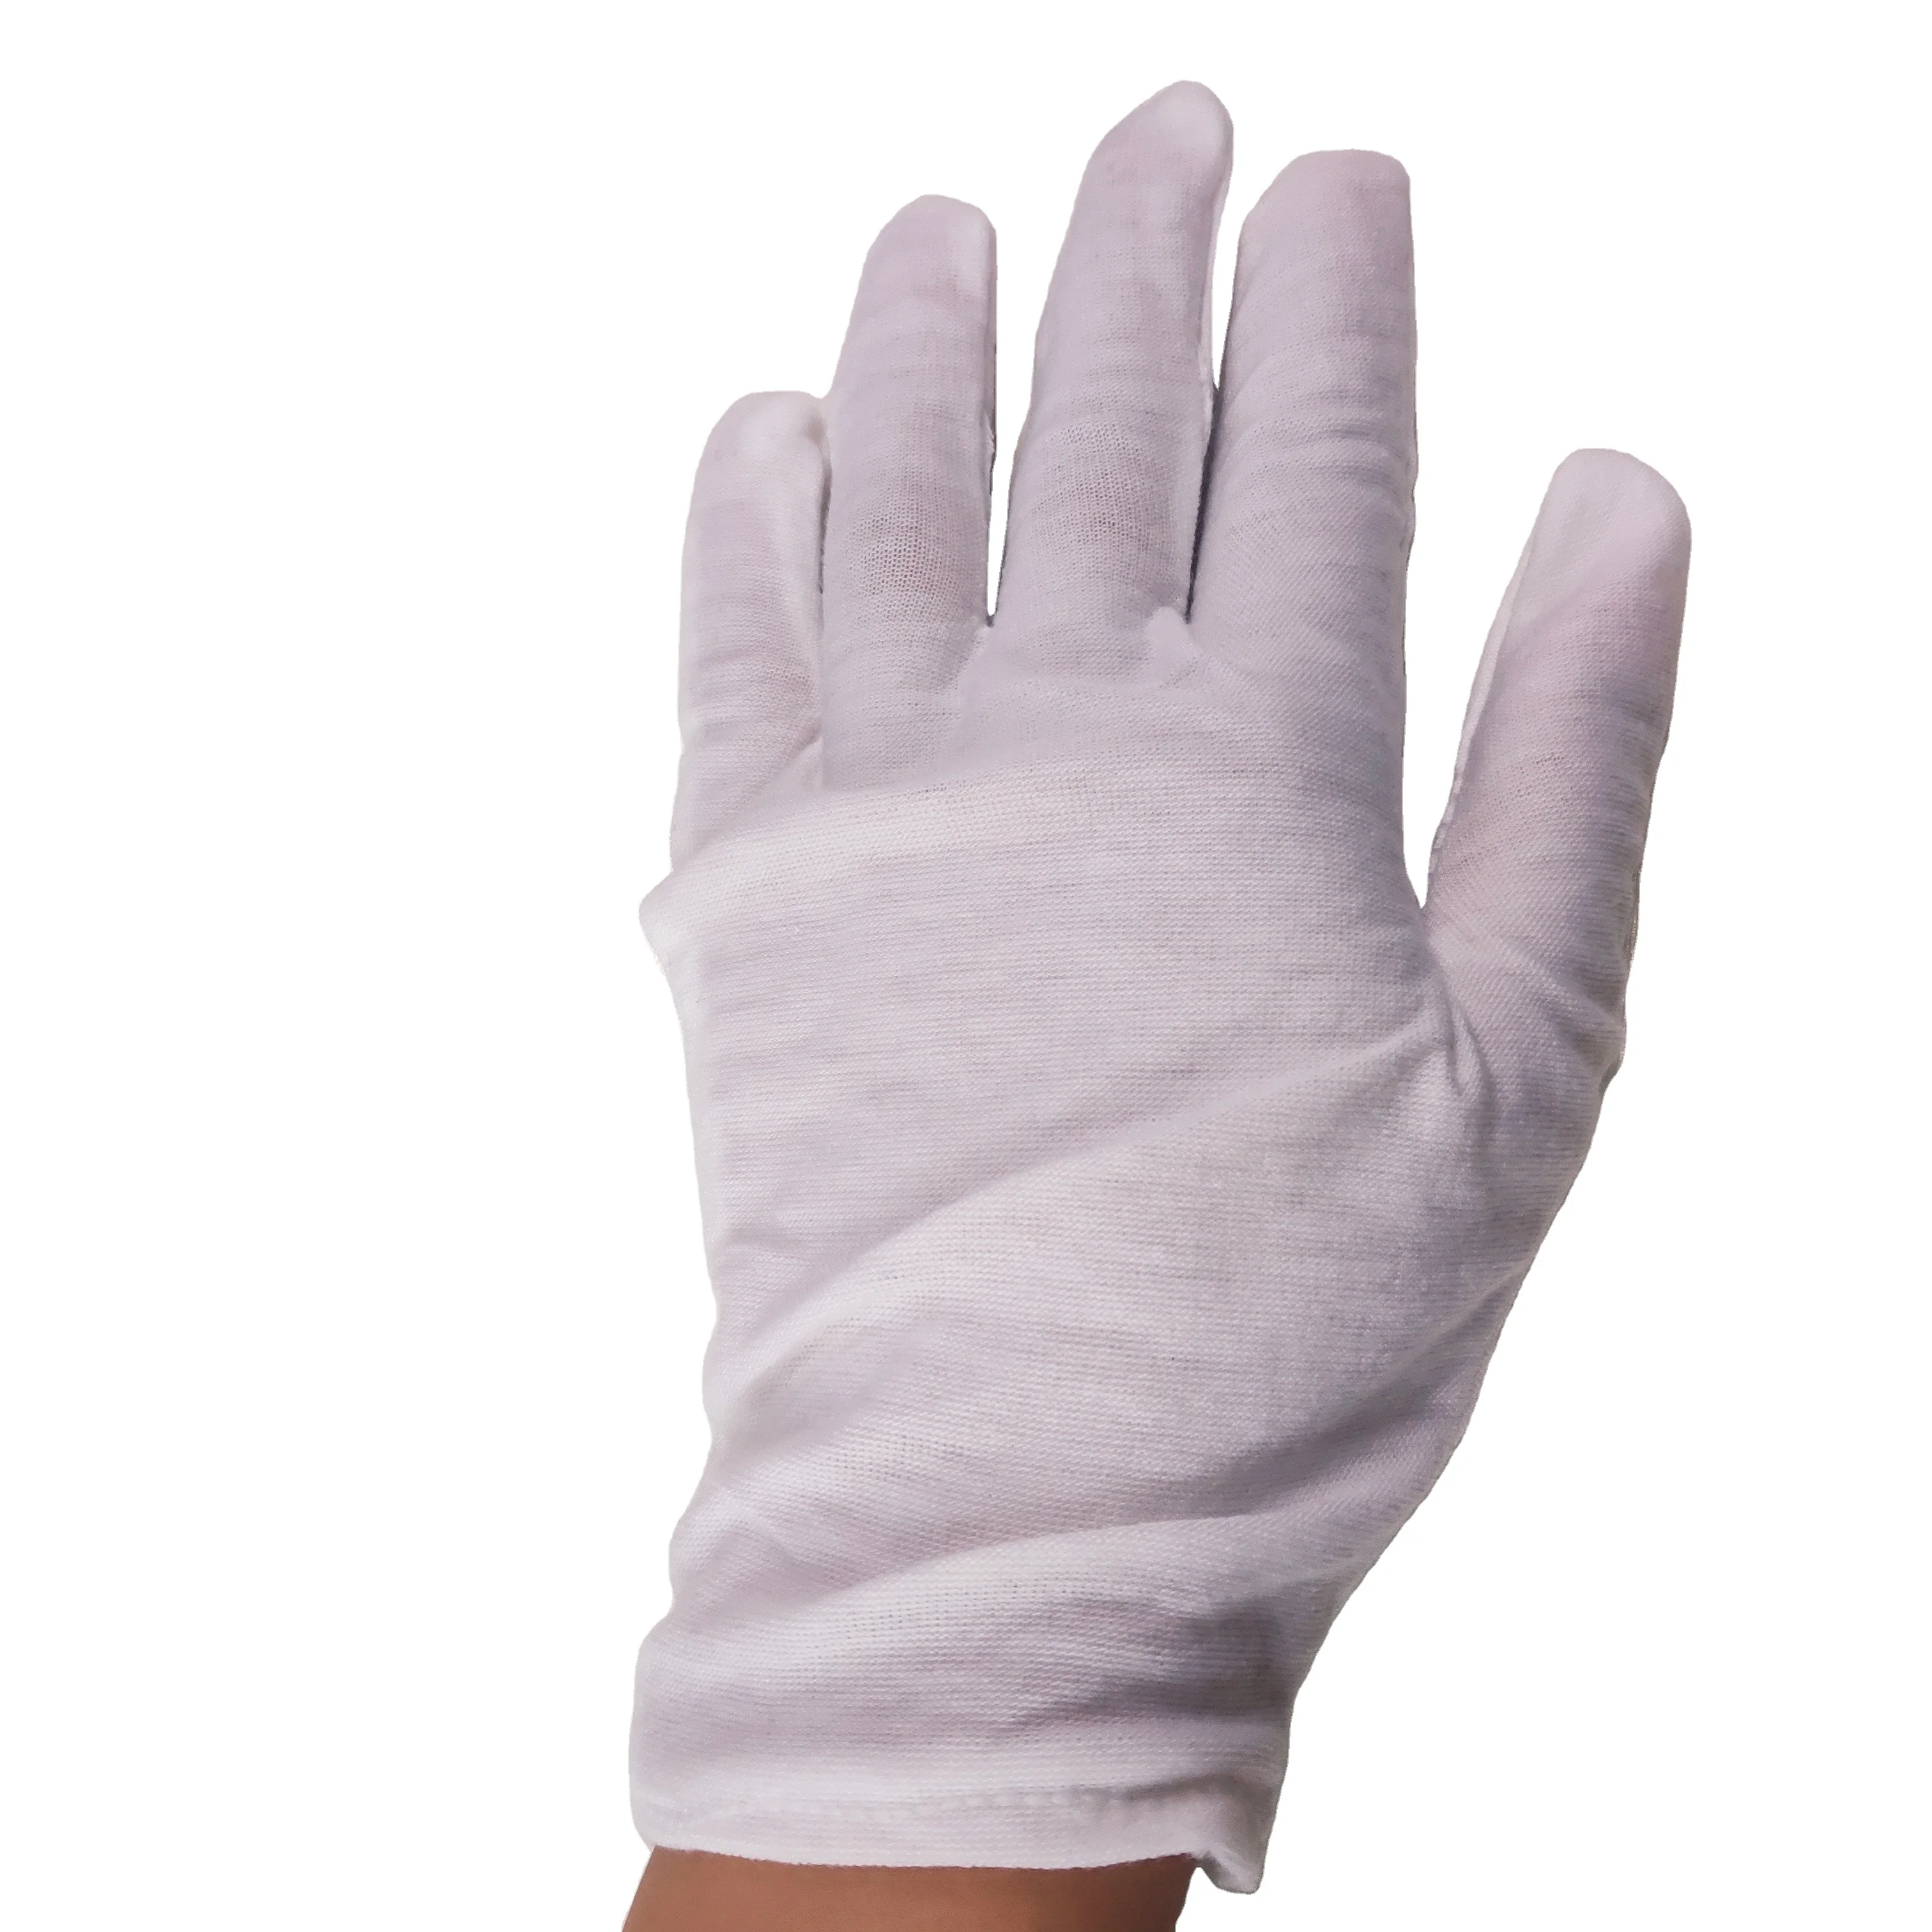 Reusable Gloves Cotton Thin White Bulk 